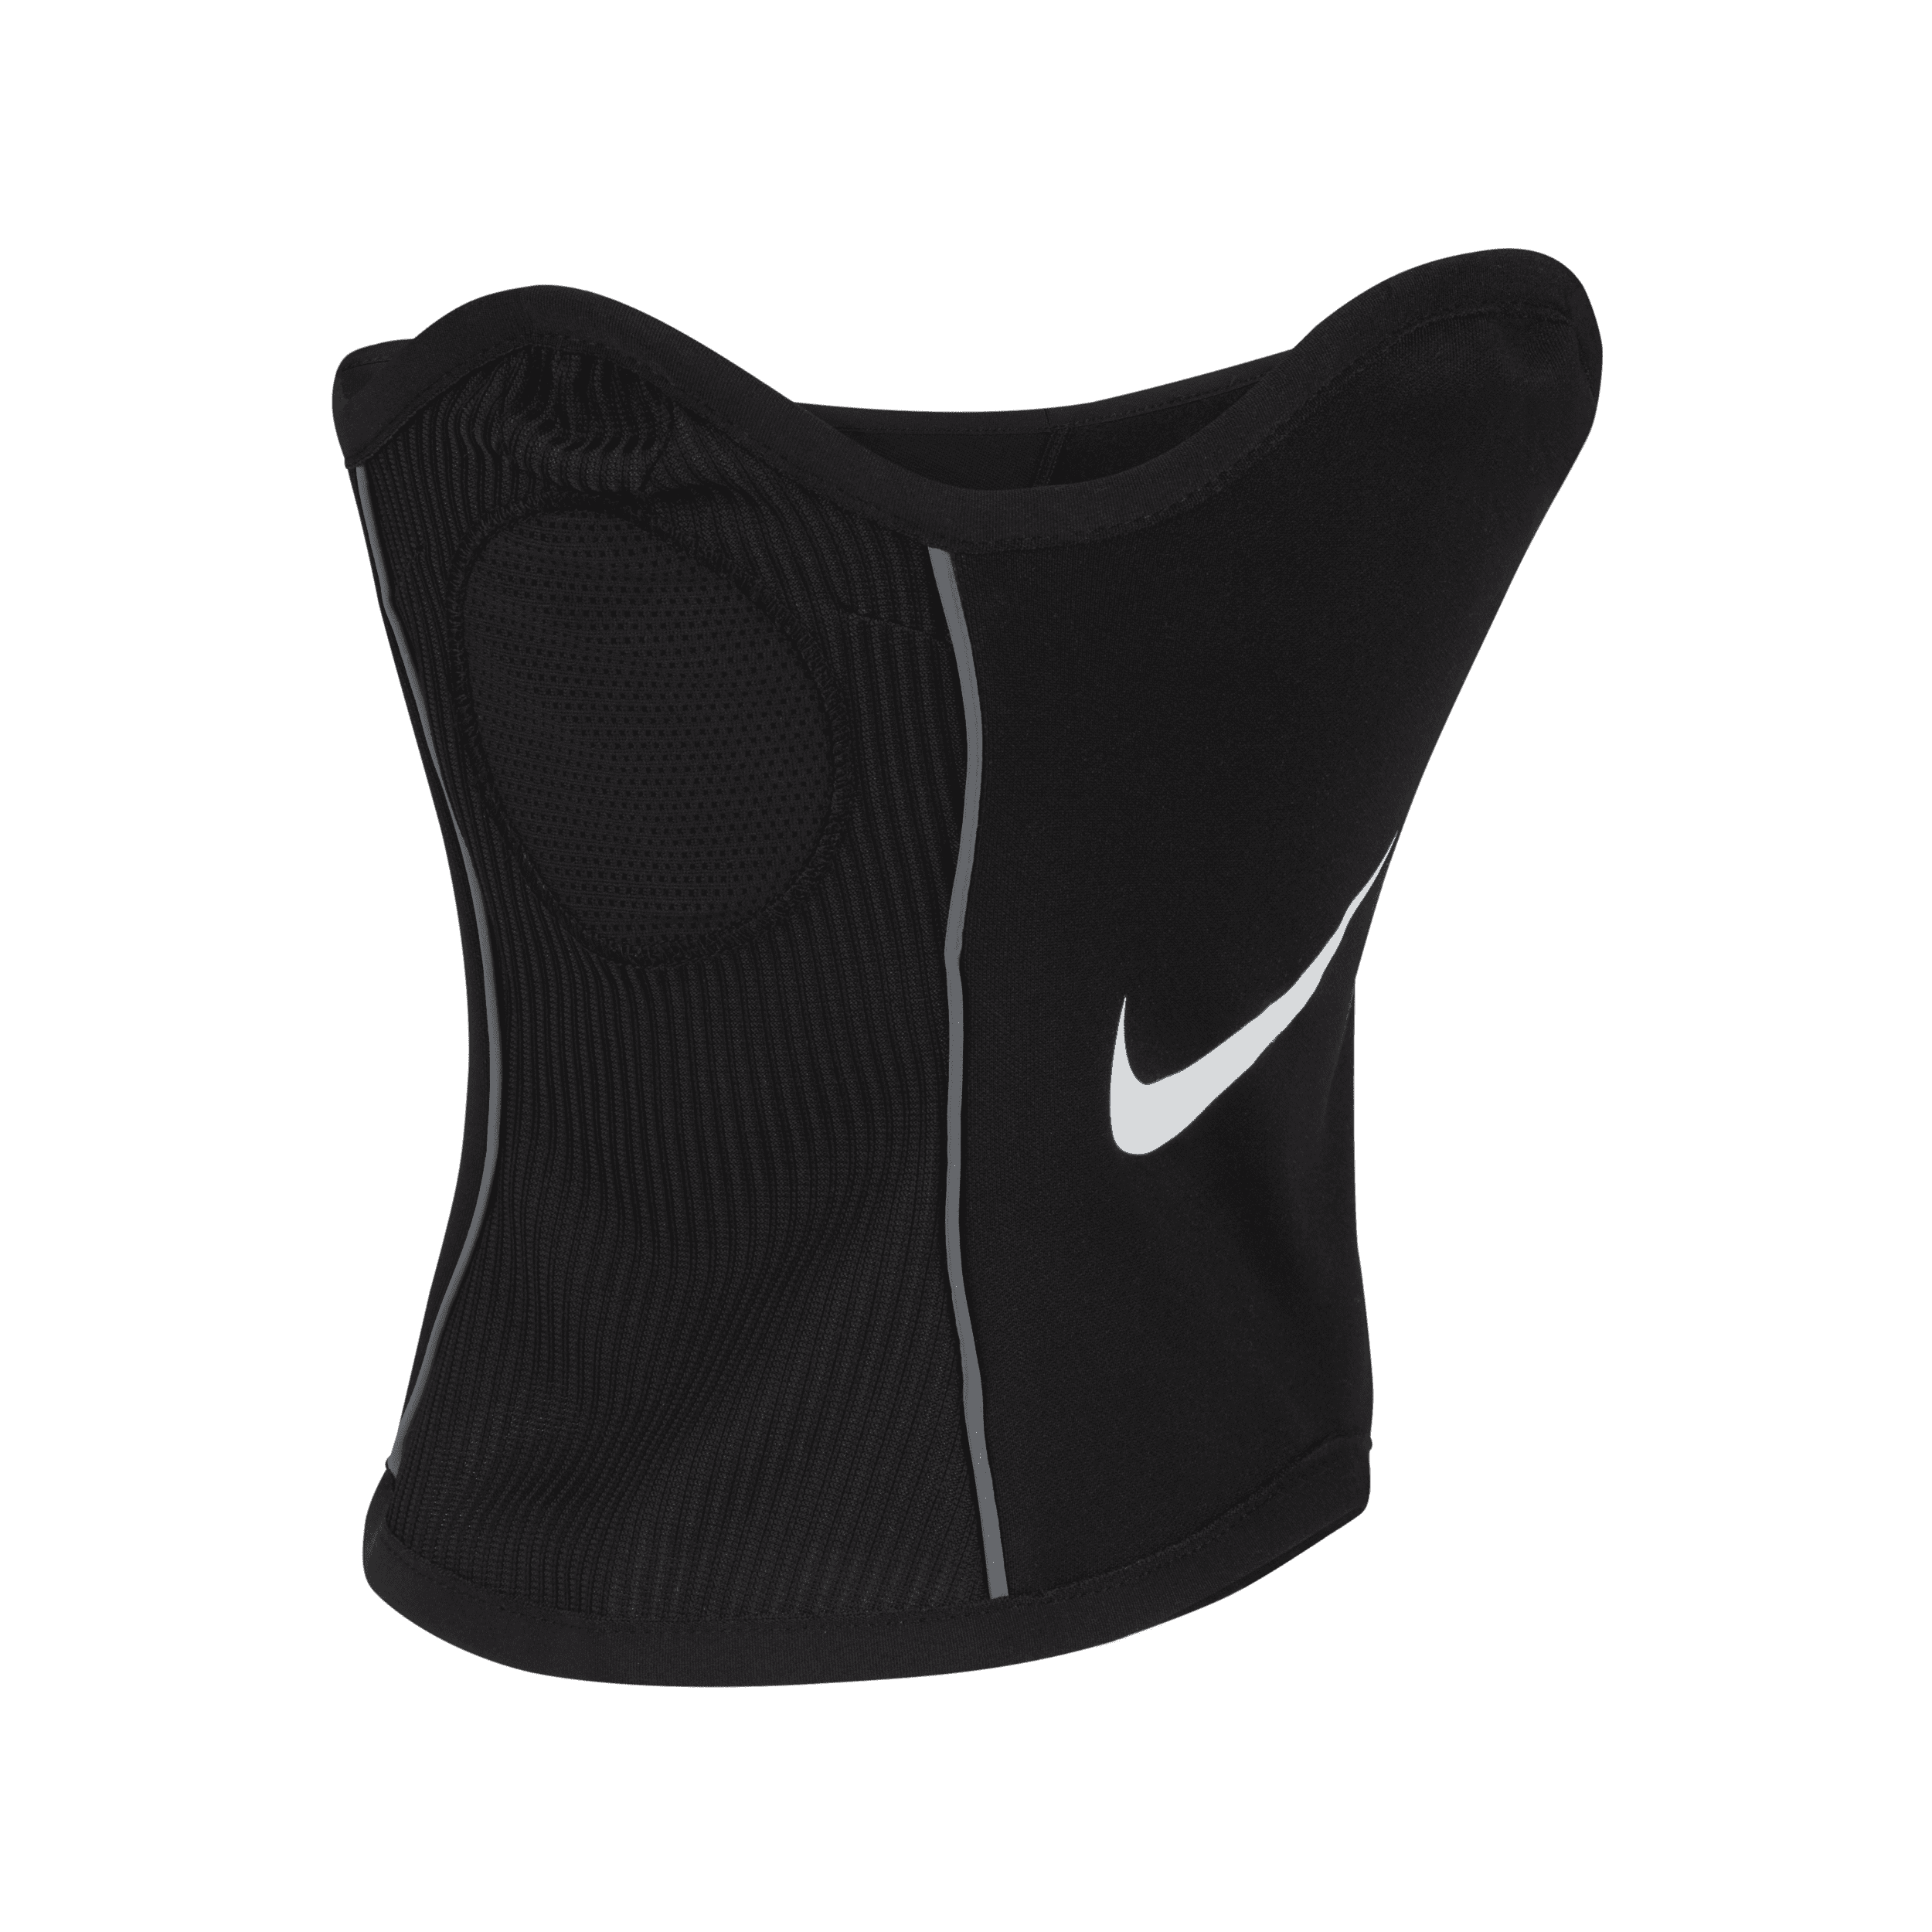 Snood da calcio Dri-FIT Nike Winter Warrior – Uomo - Nero